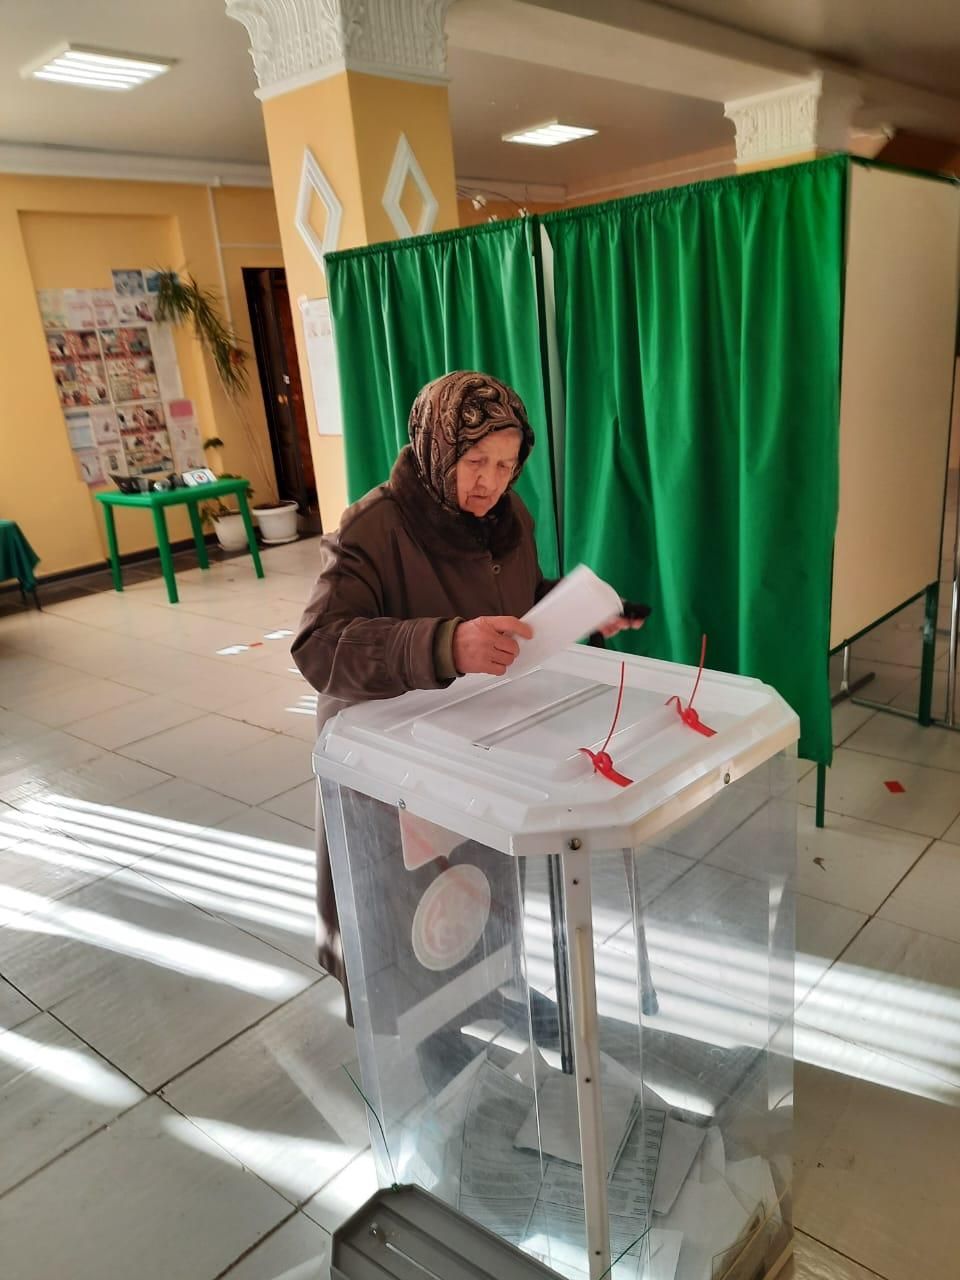 Как Верхний Услон голосовал в первый день выборов Президента России